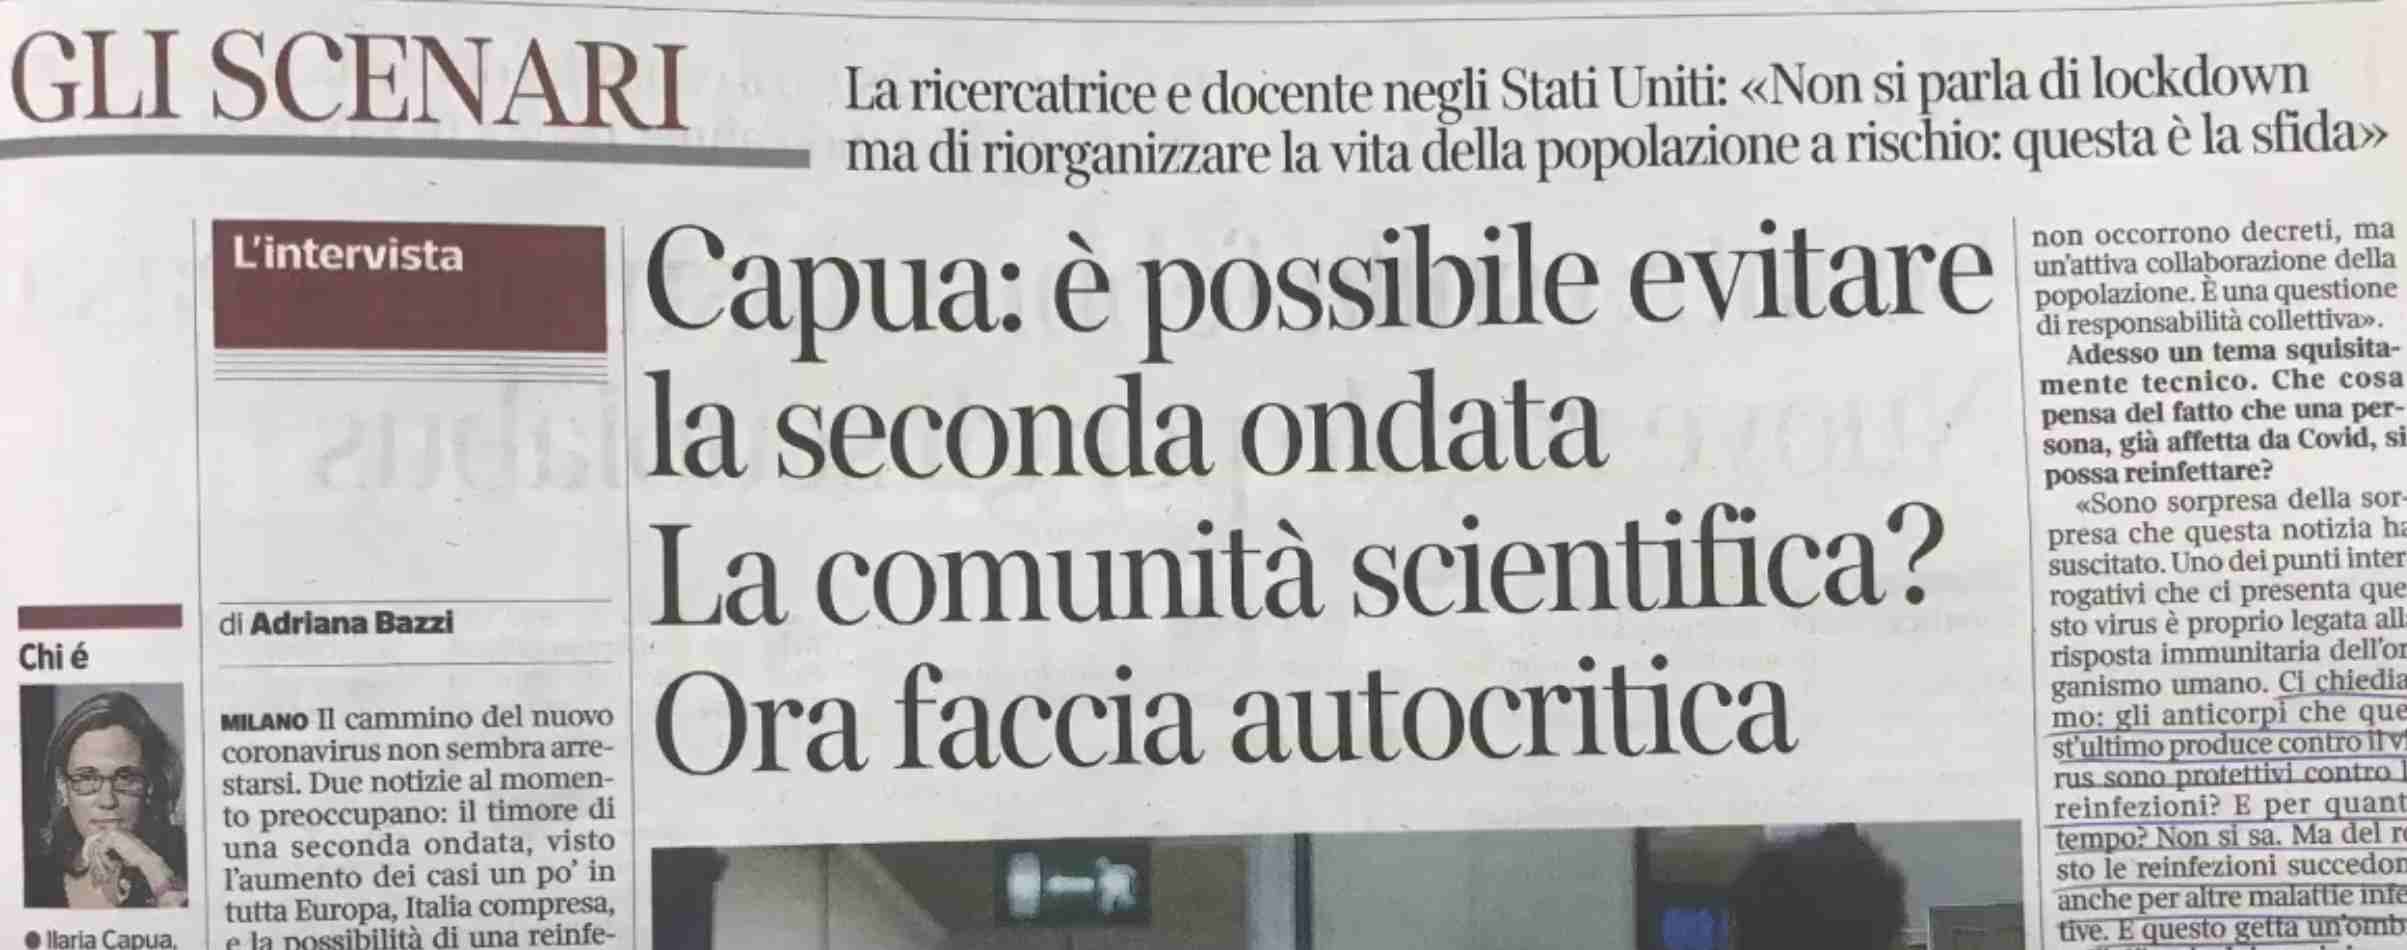 Sul Corriere la dott.ssa Capua dice di non fare molto affidamento sul vaccino ant-Covid ma subito smentita. Da chi? Dalla linea editoriale 1